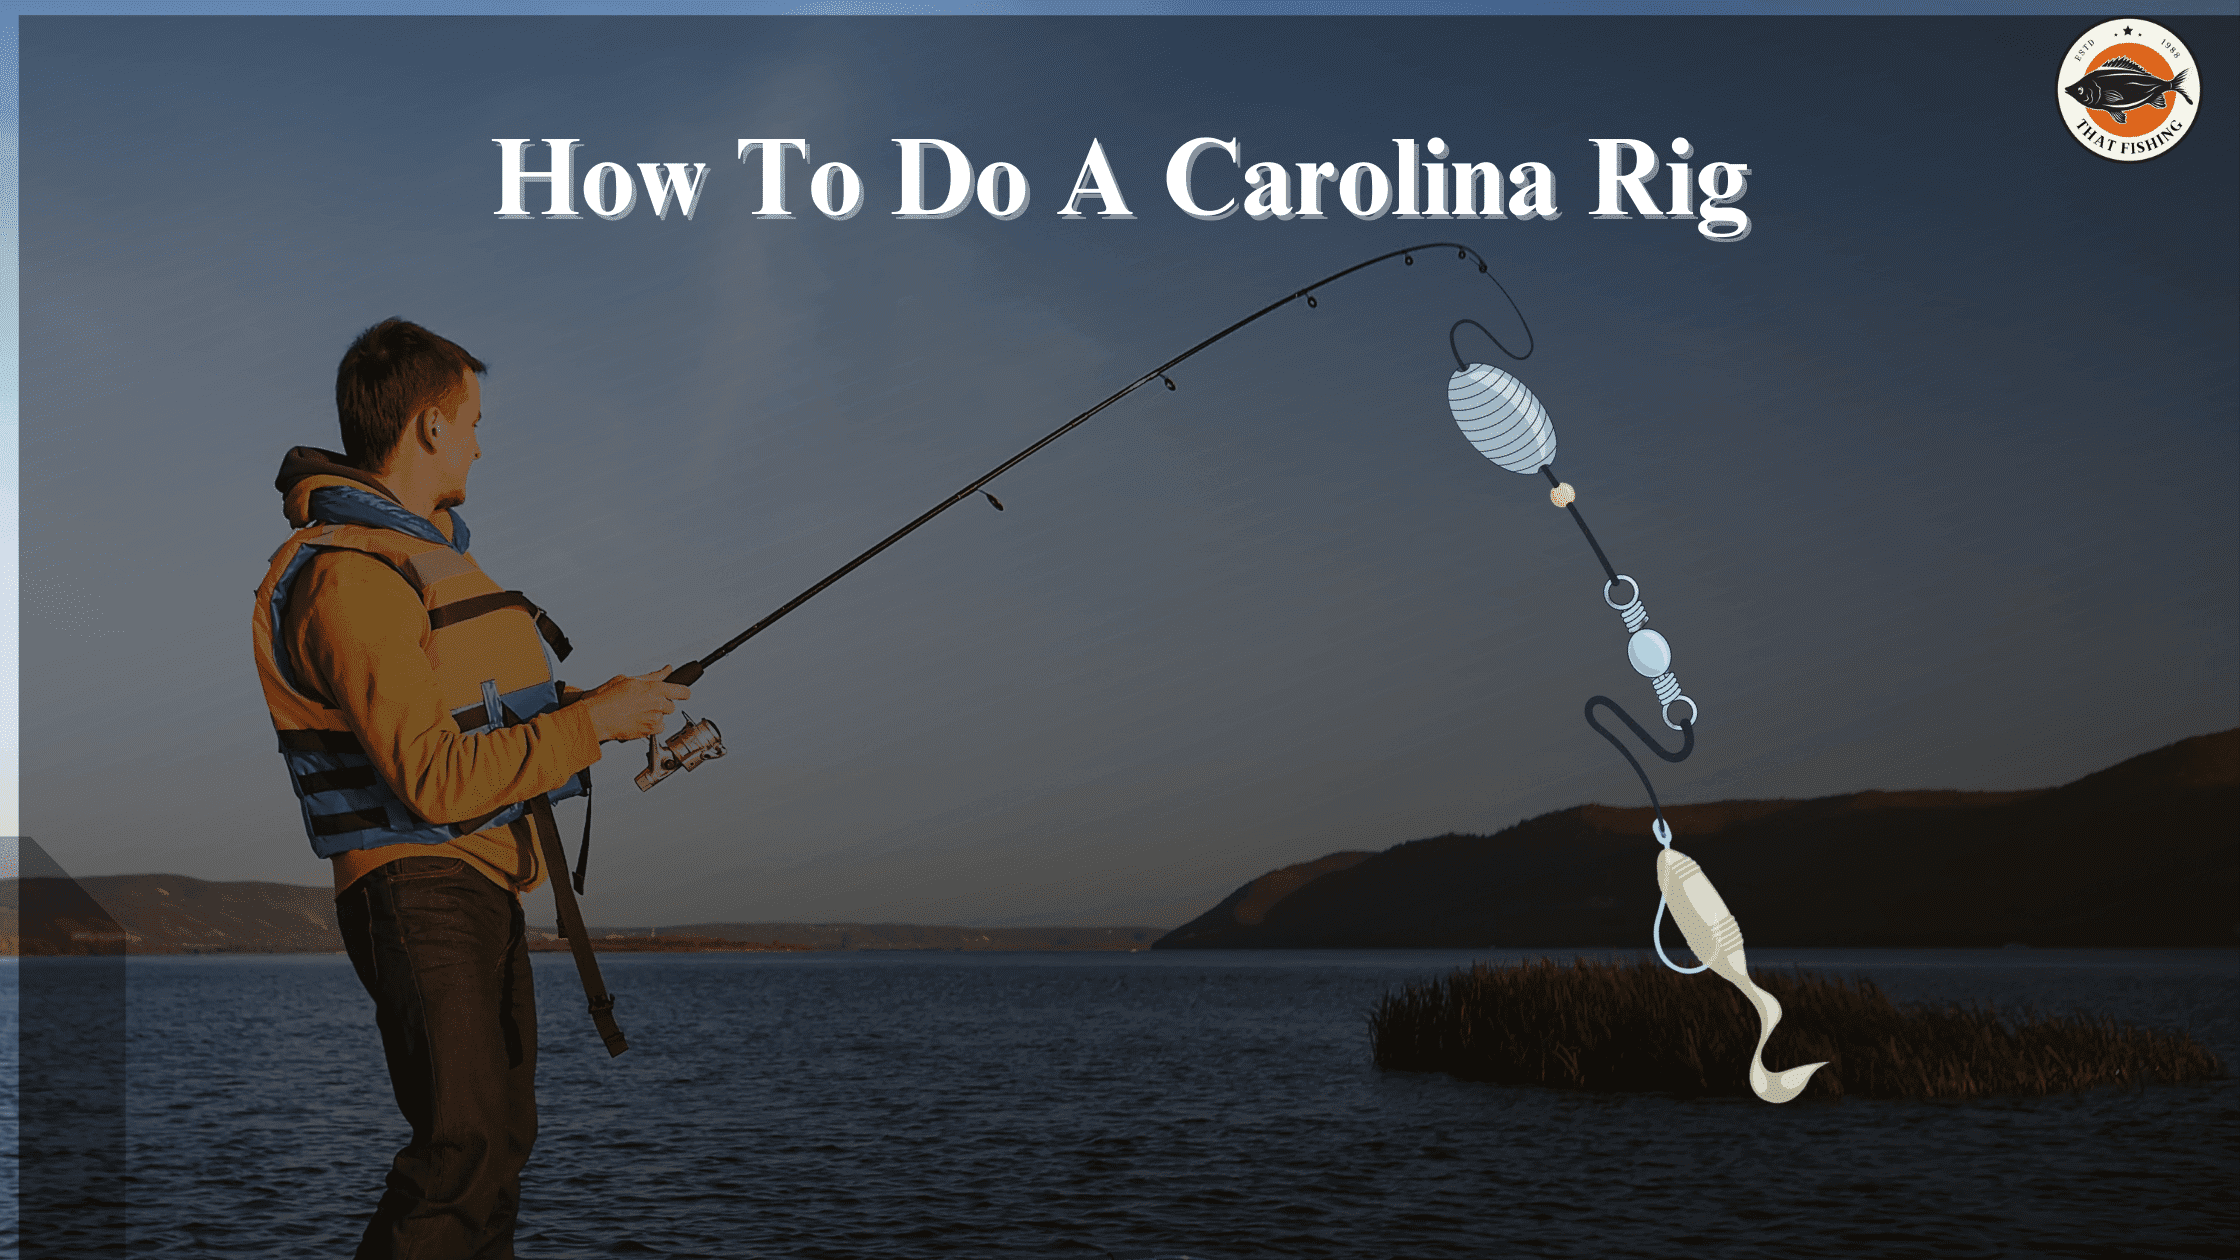 How To Do A Carolina Rig- A Step-By-Step Guide